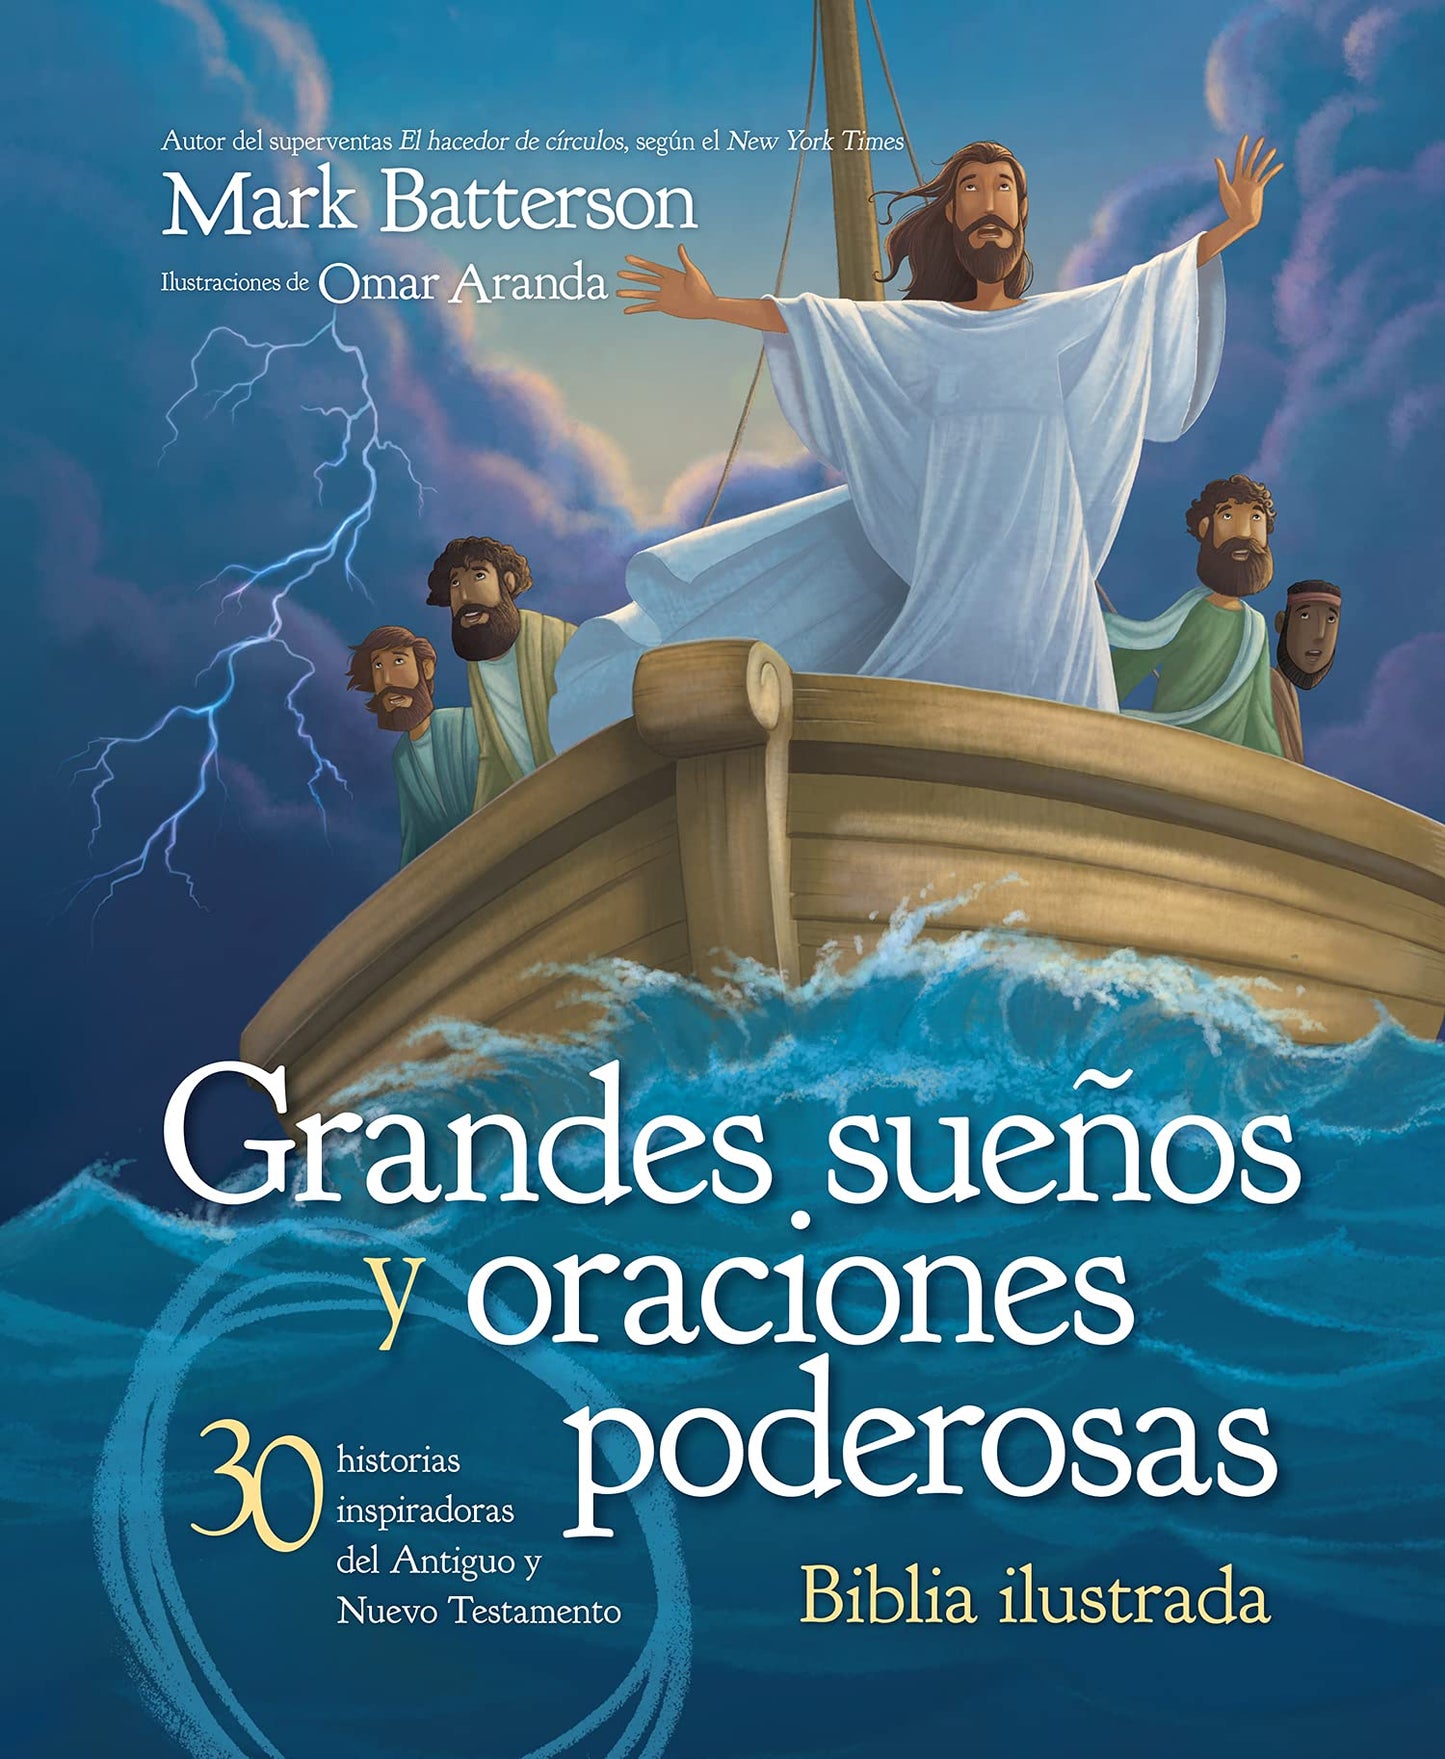 Biblia Ilustrada: Grandes Sueños y Oraciones Poderosas — 30 historias inspiradoras del Antiguo y Nuevo Testamento  — Mark Batterson